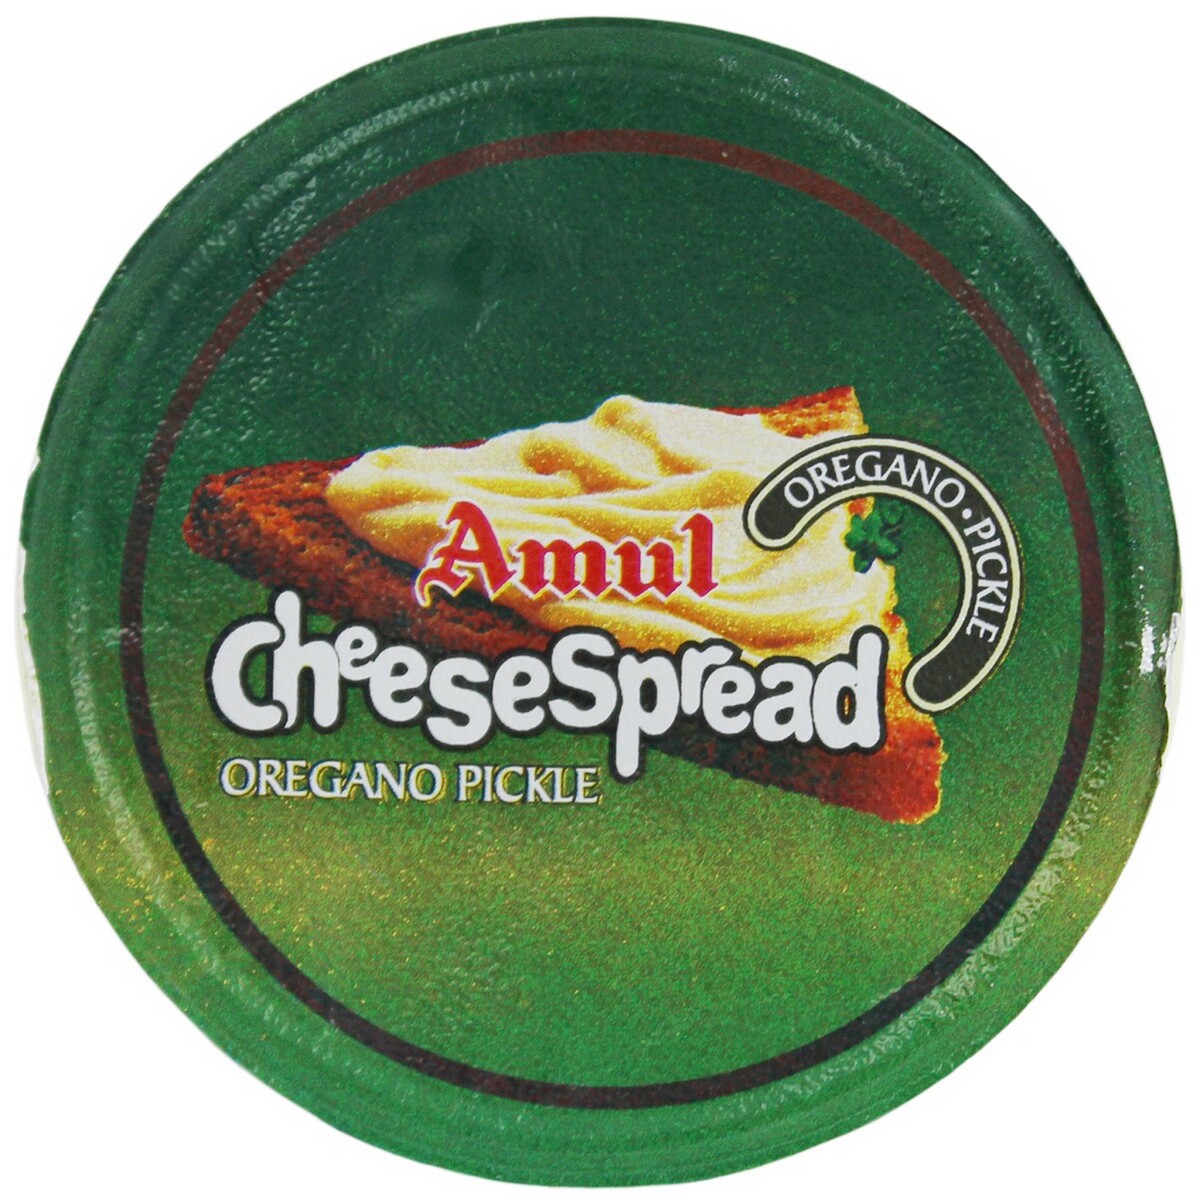 Amul Cheese Spread Oregano Pickle 200g